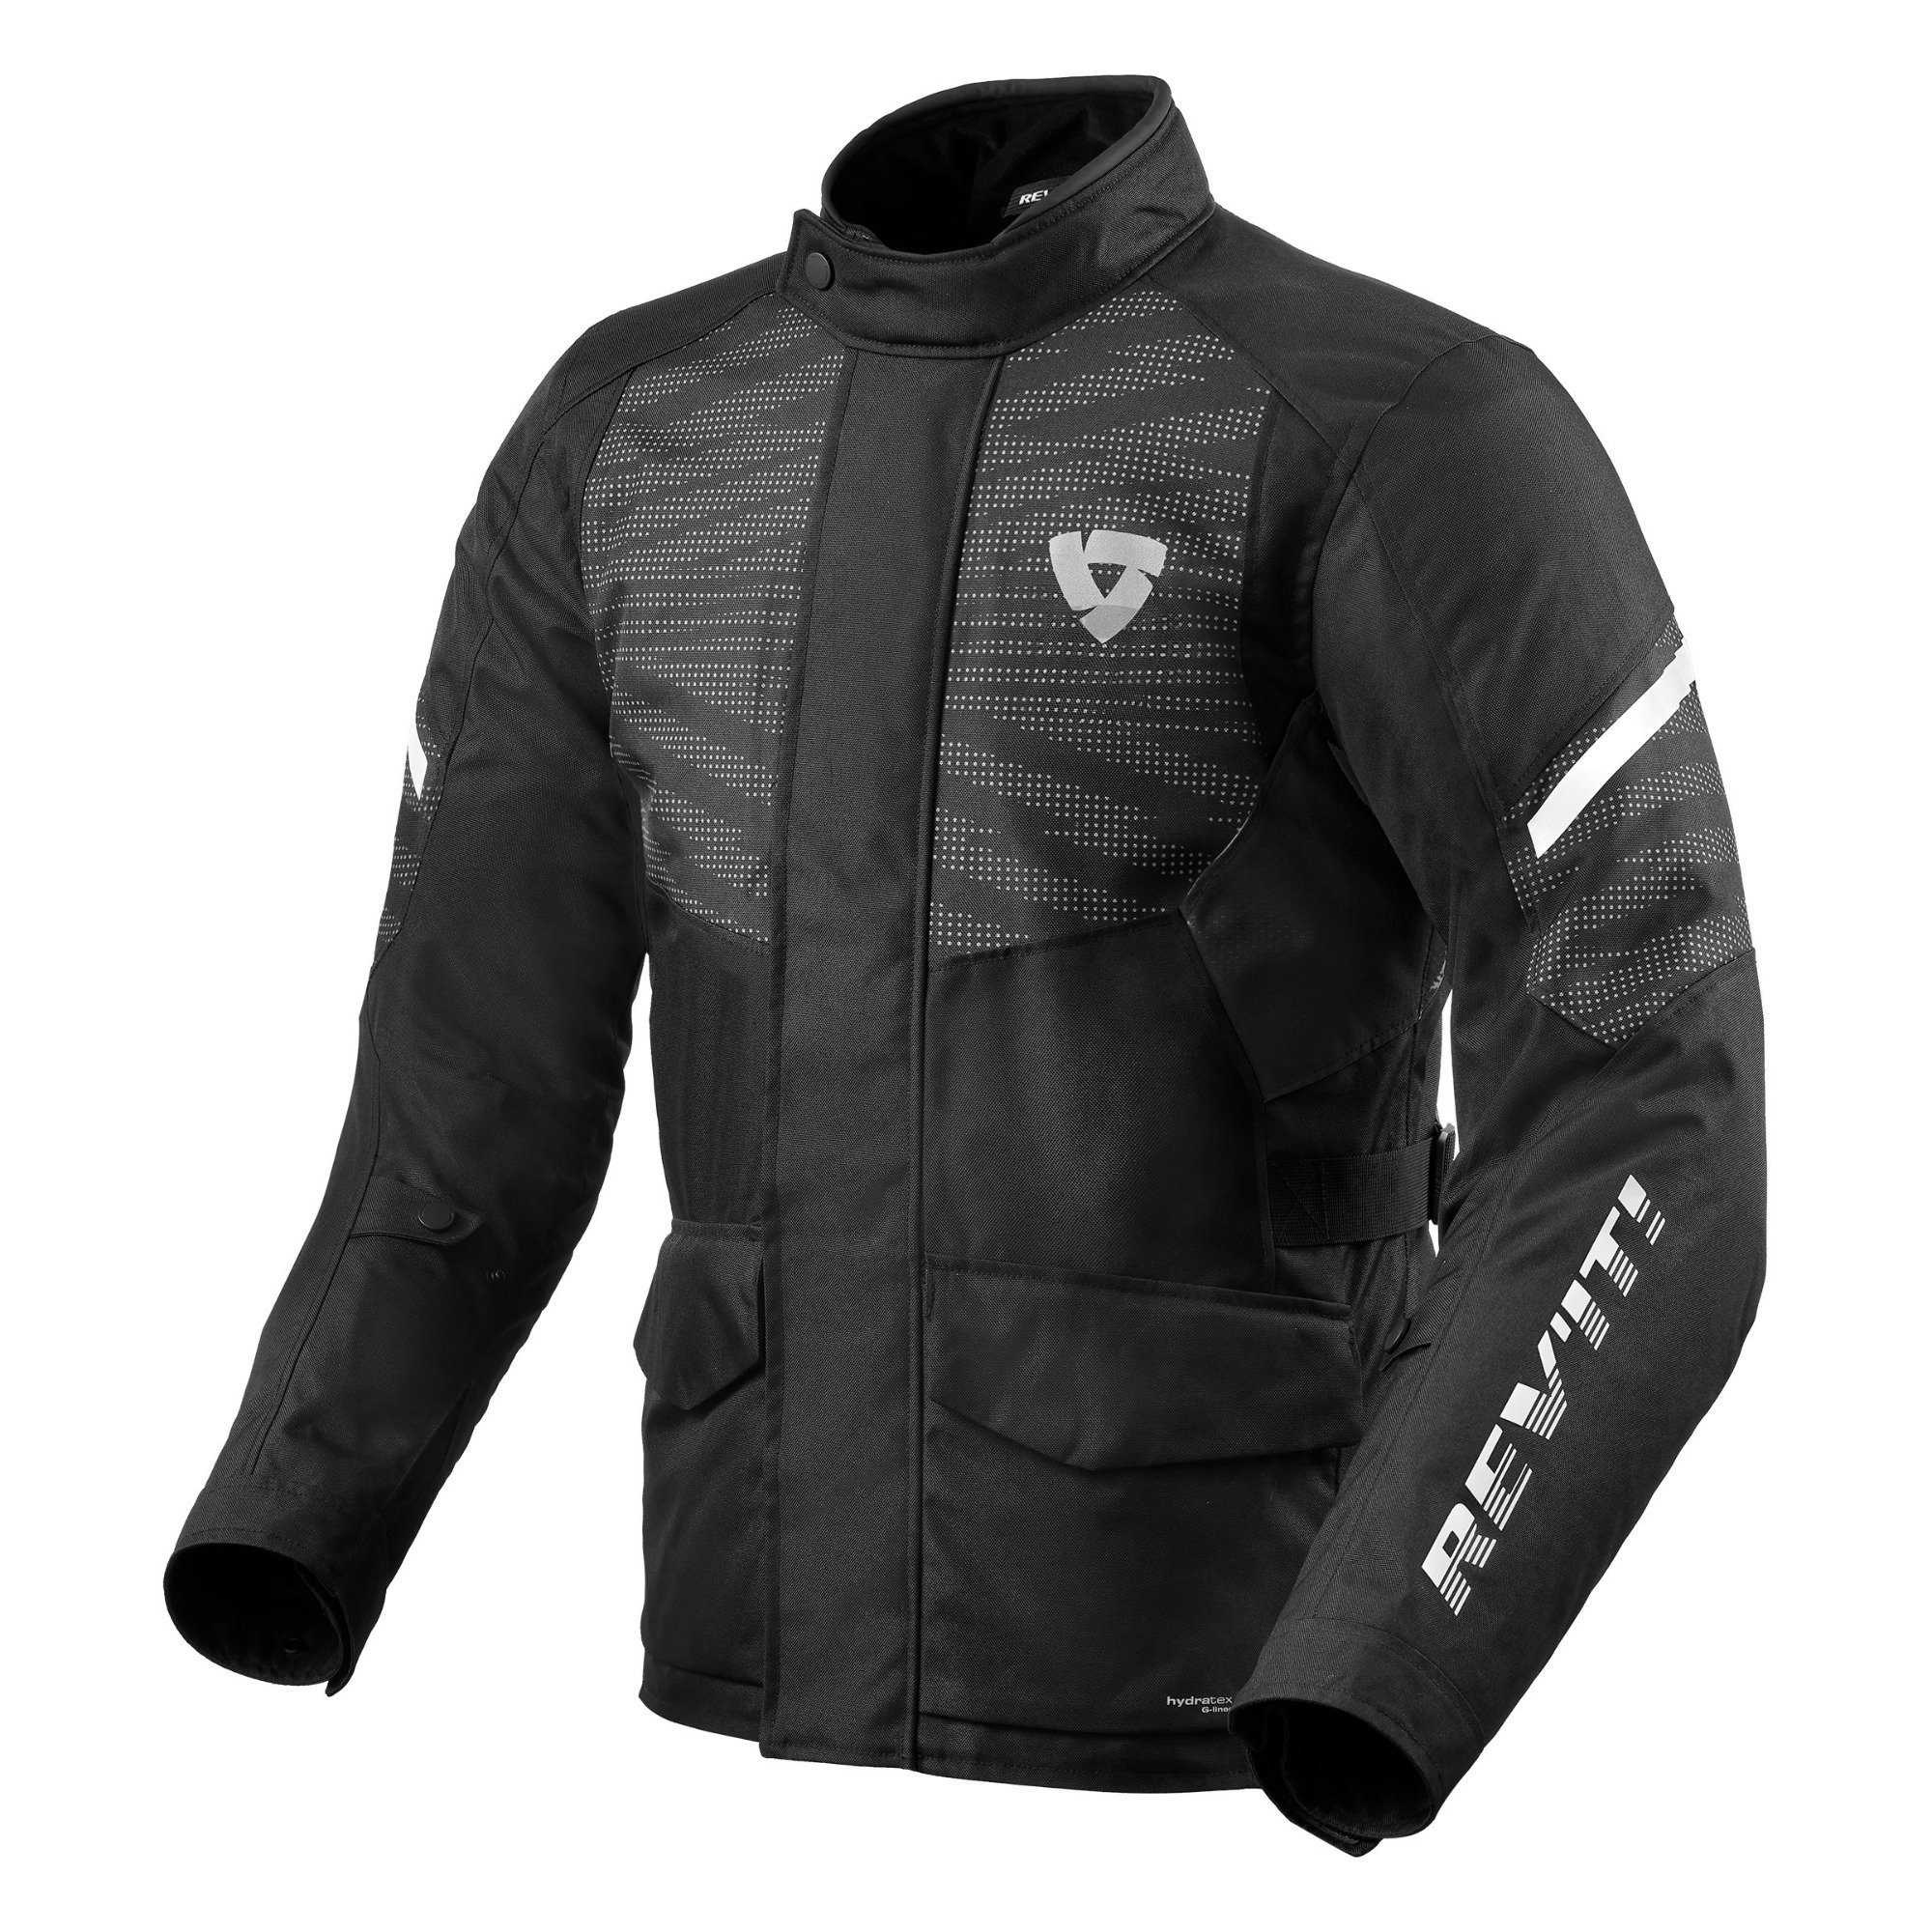 Image of REV'IT! Duke H2O Jacket Black Size XL ID 8700001331968